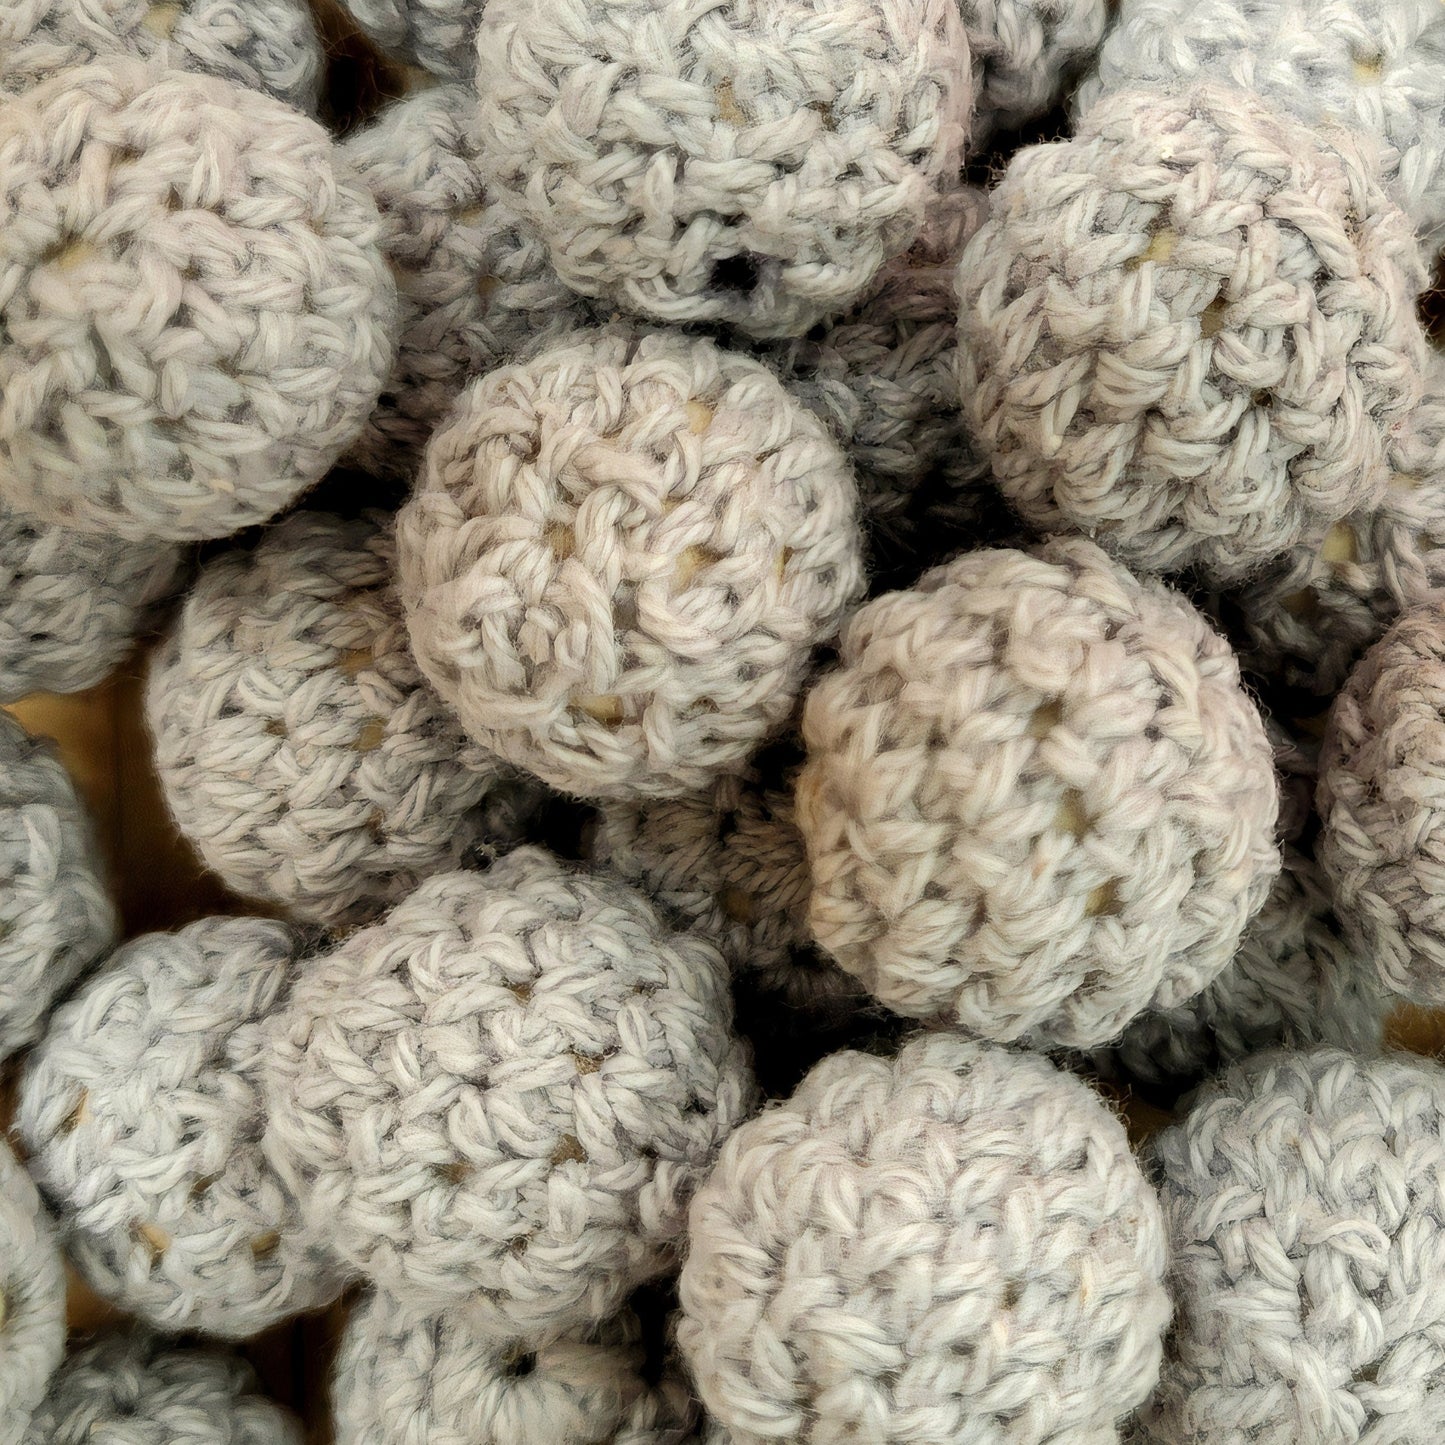 Crochet Round Beads | 15mm